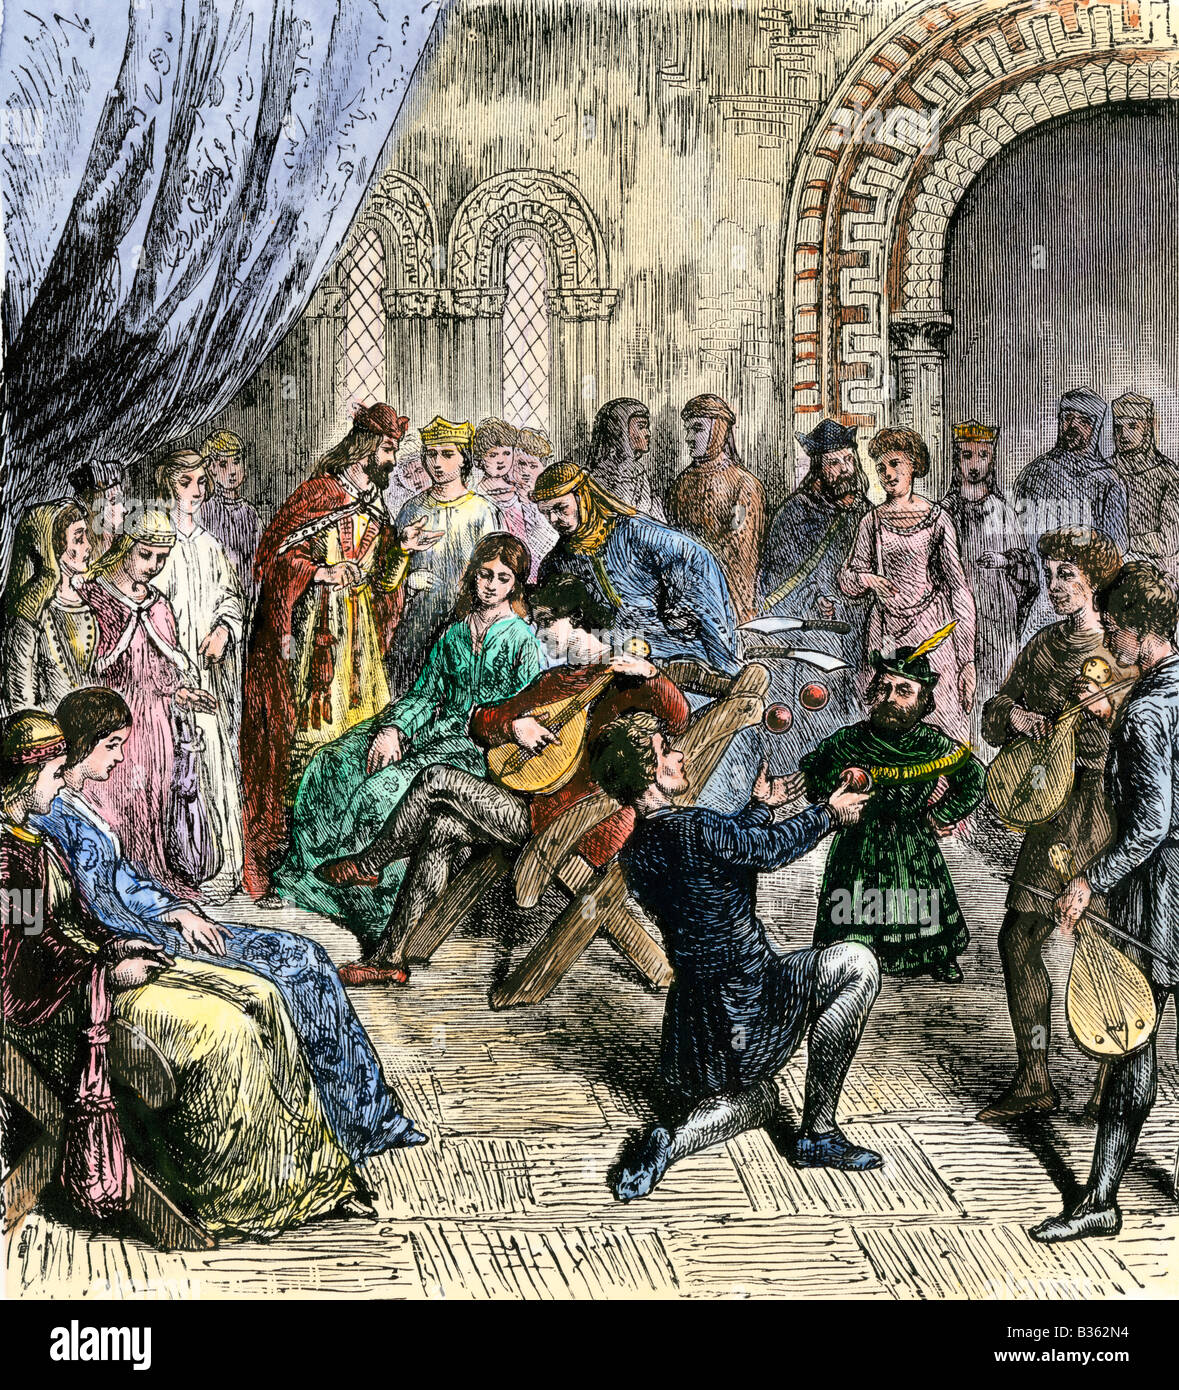 Ménestrels et jongleurs effectuant une cour royale au Moyen-Âge. À la main, gravure sur bois Banque D'Images